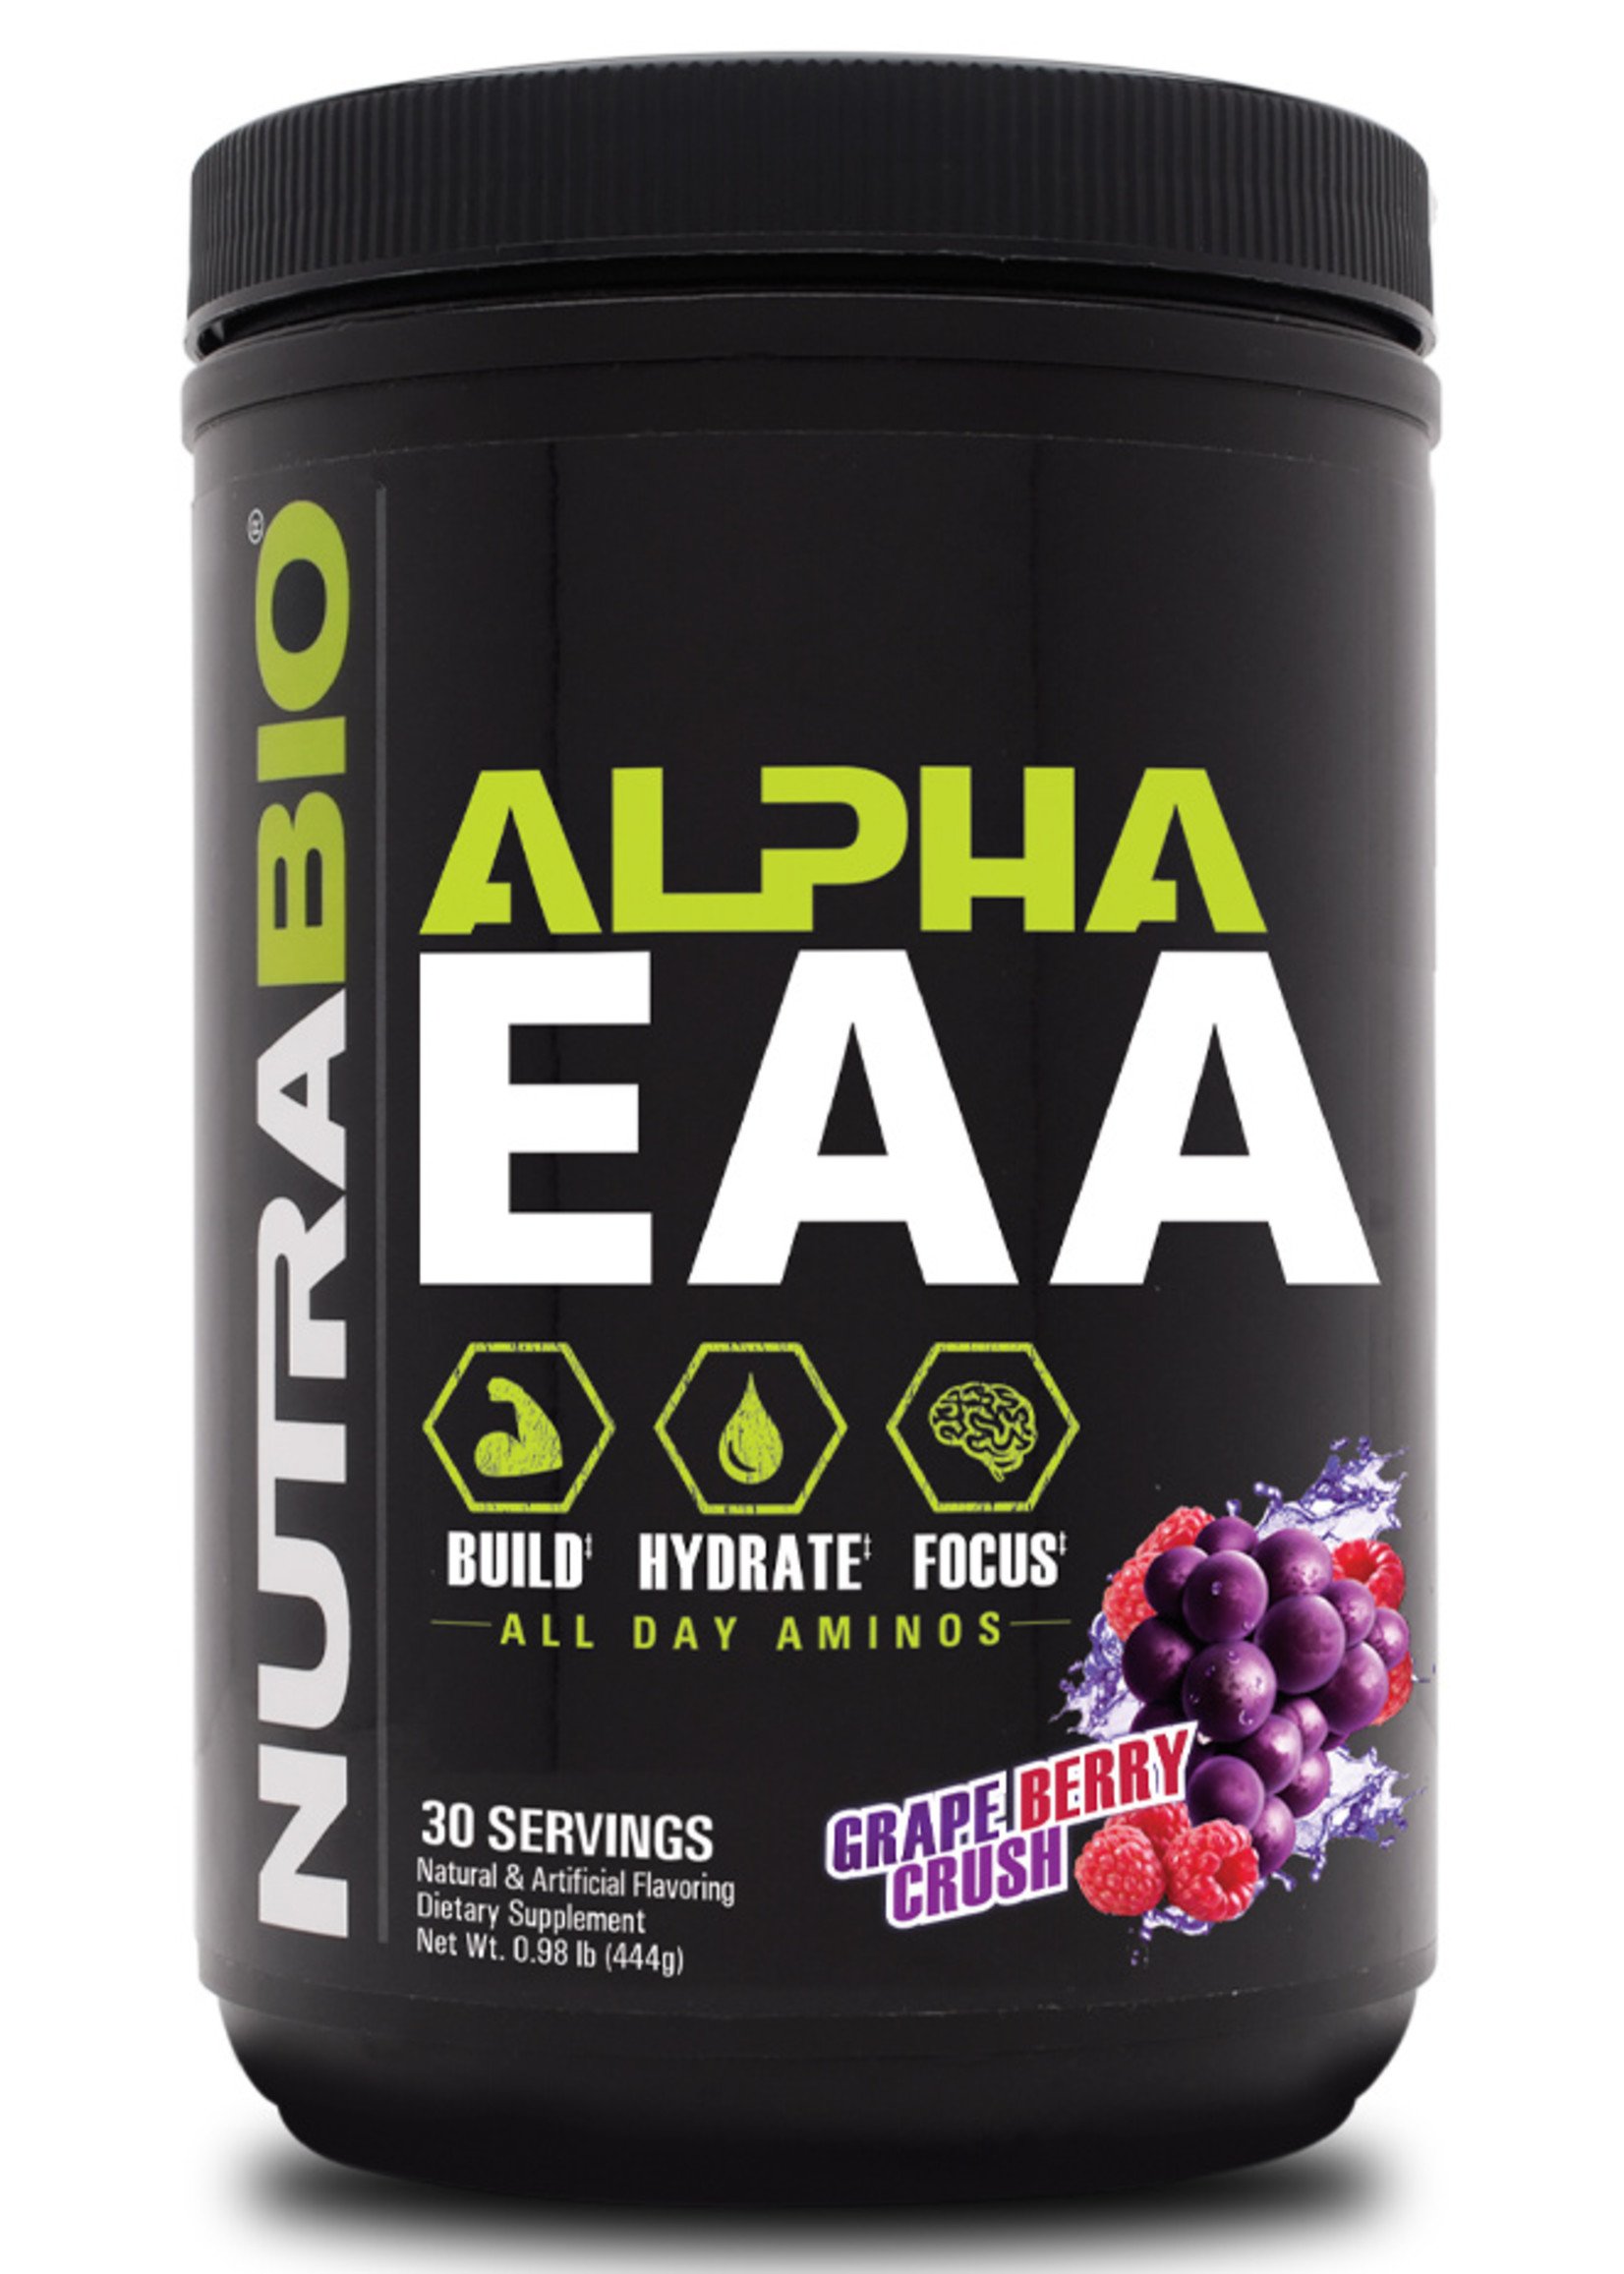 Nutra Bio Alpha EAA